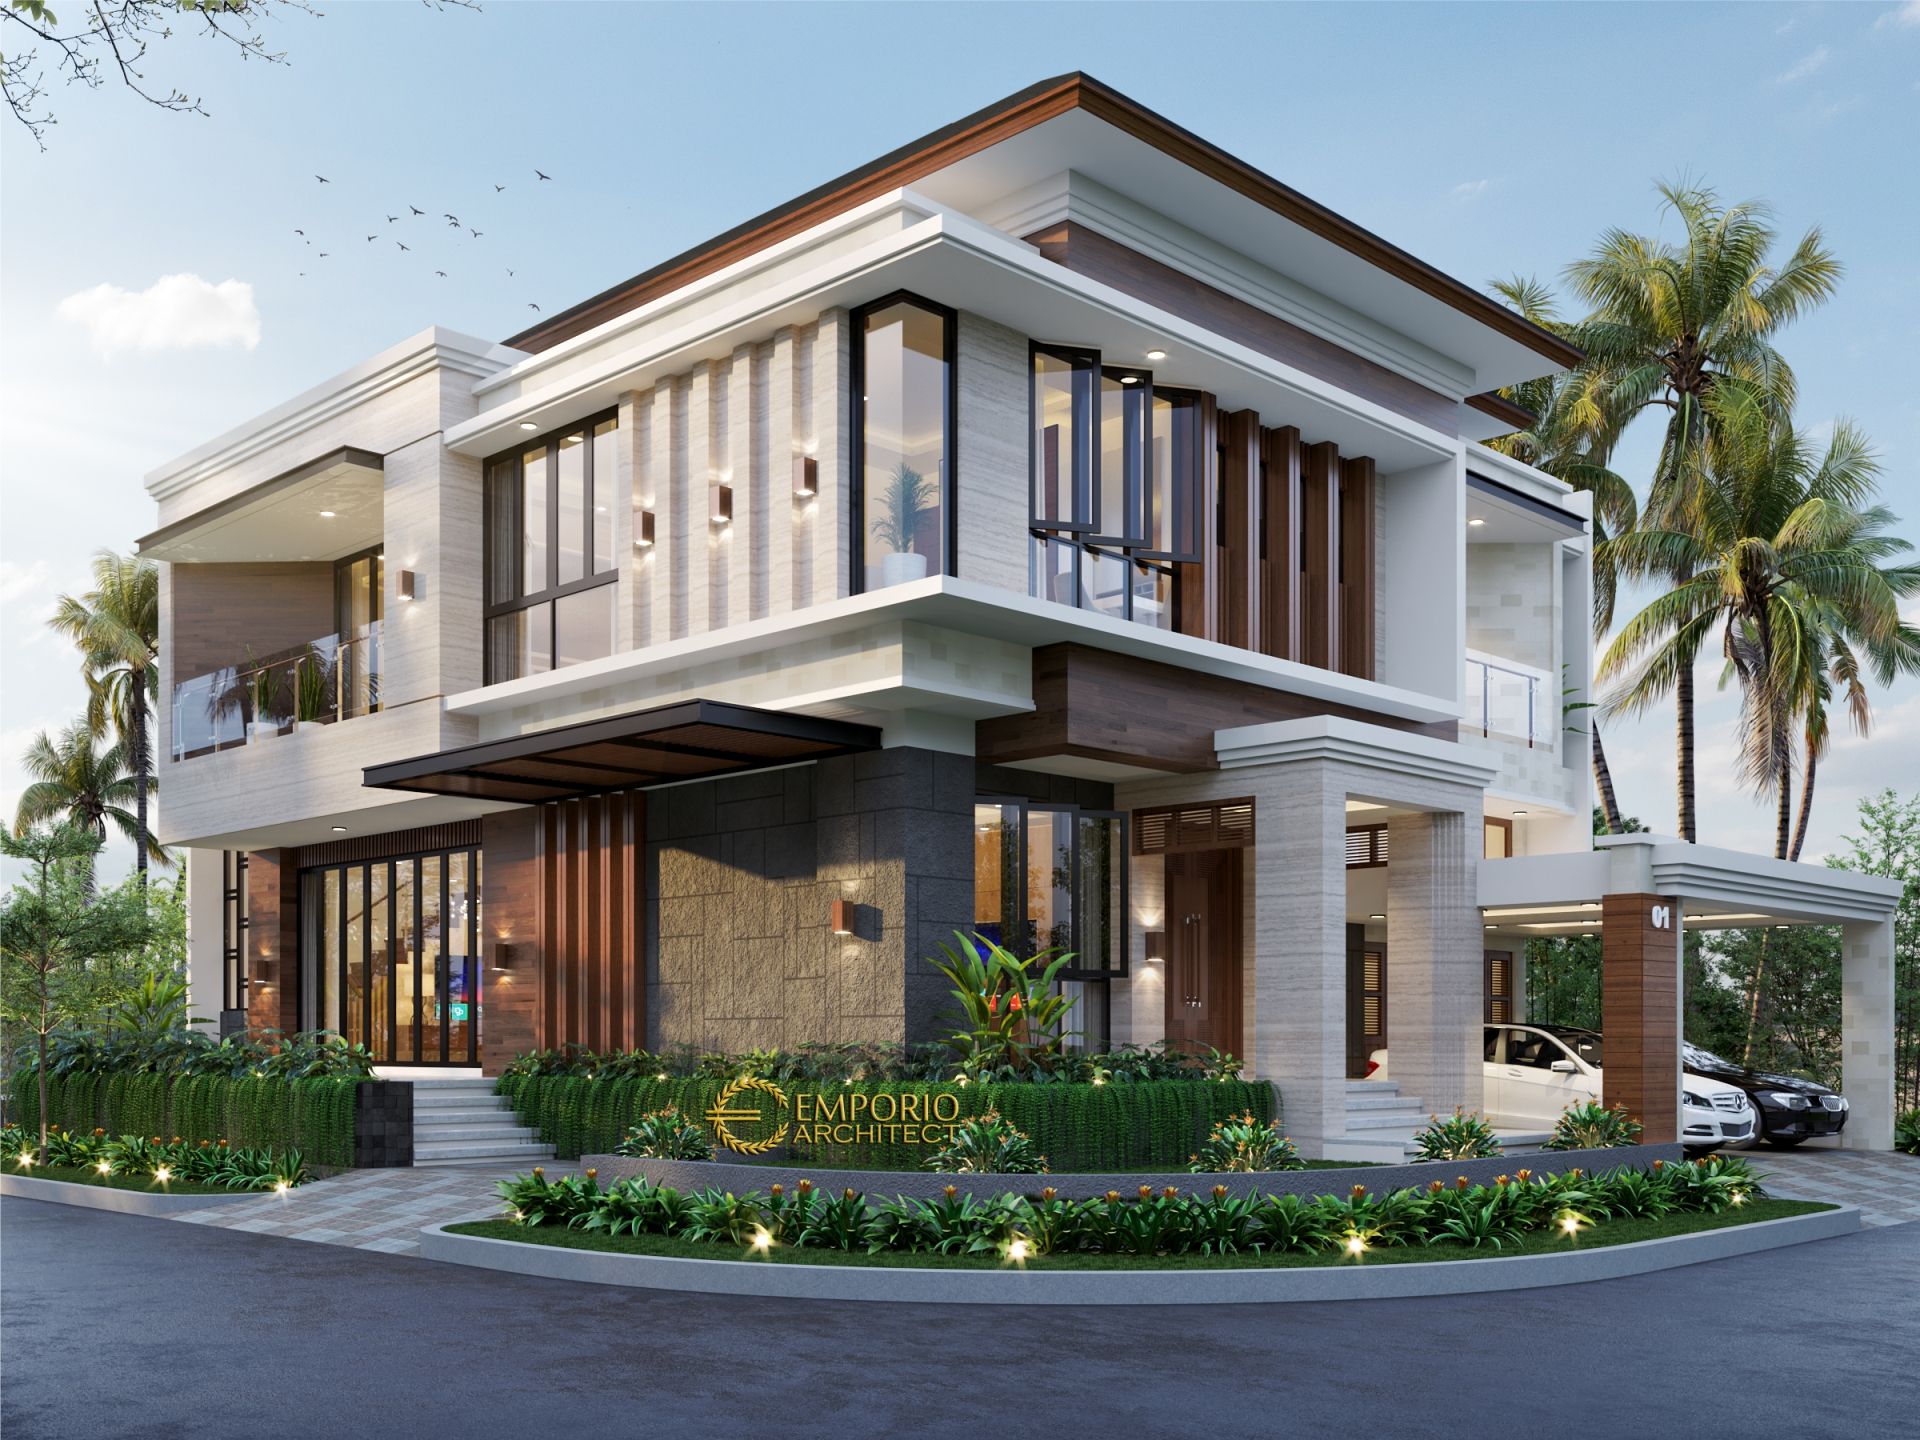  Desain  Rumah  Hook Villa  Bali 2  5 Lantai  Bapak Arief di 